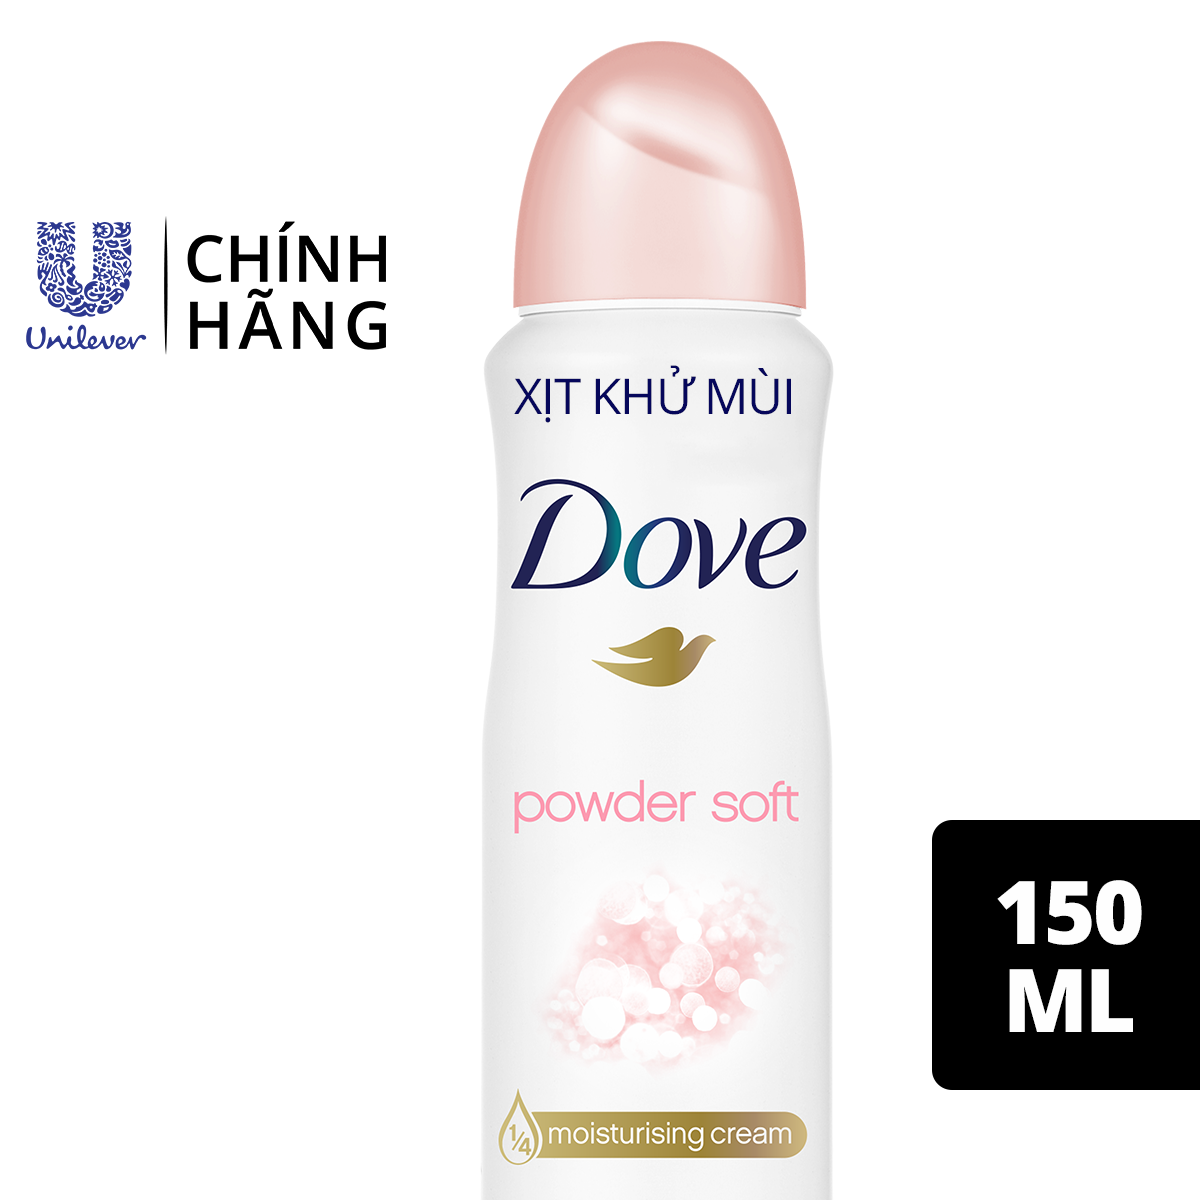 Xịt khử mùi Dove Powder Soft Hương phấn thơm Dưỡng da Sáng mịn dành cho nữ